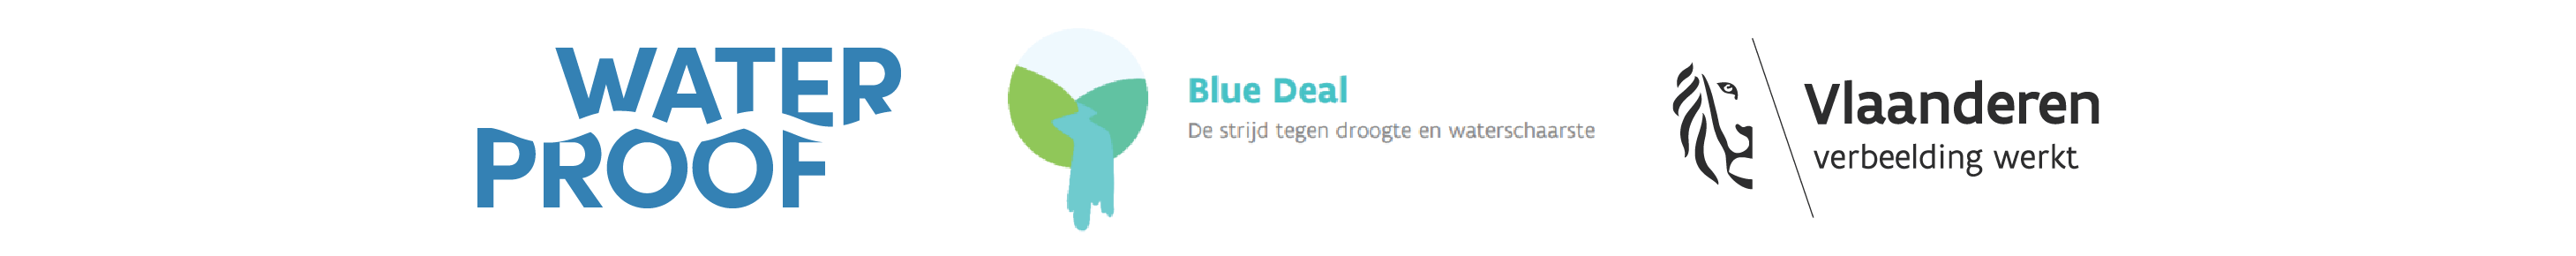 Logobalken WaterProof_WaterProof_Blue Deal_Vlaanderen Verbeelding